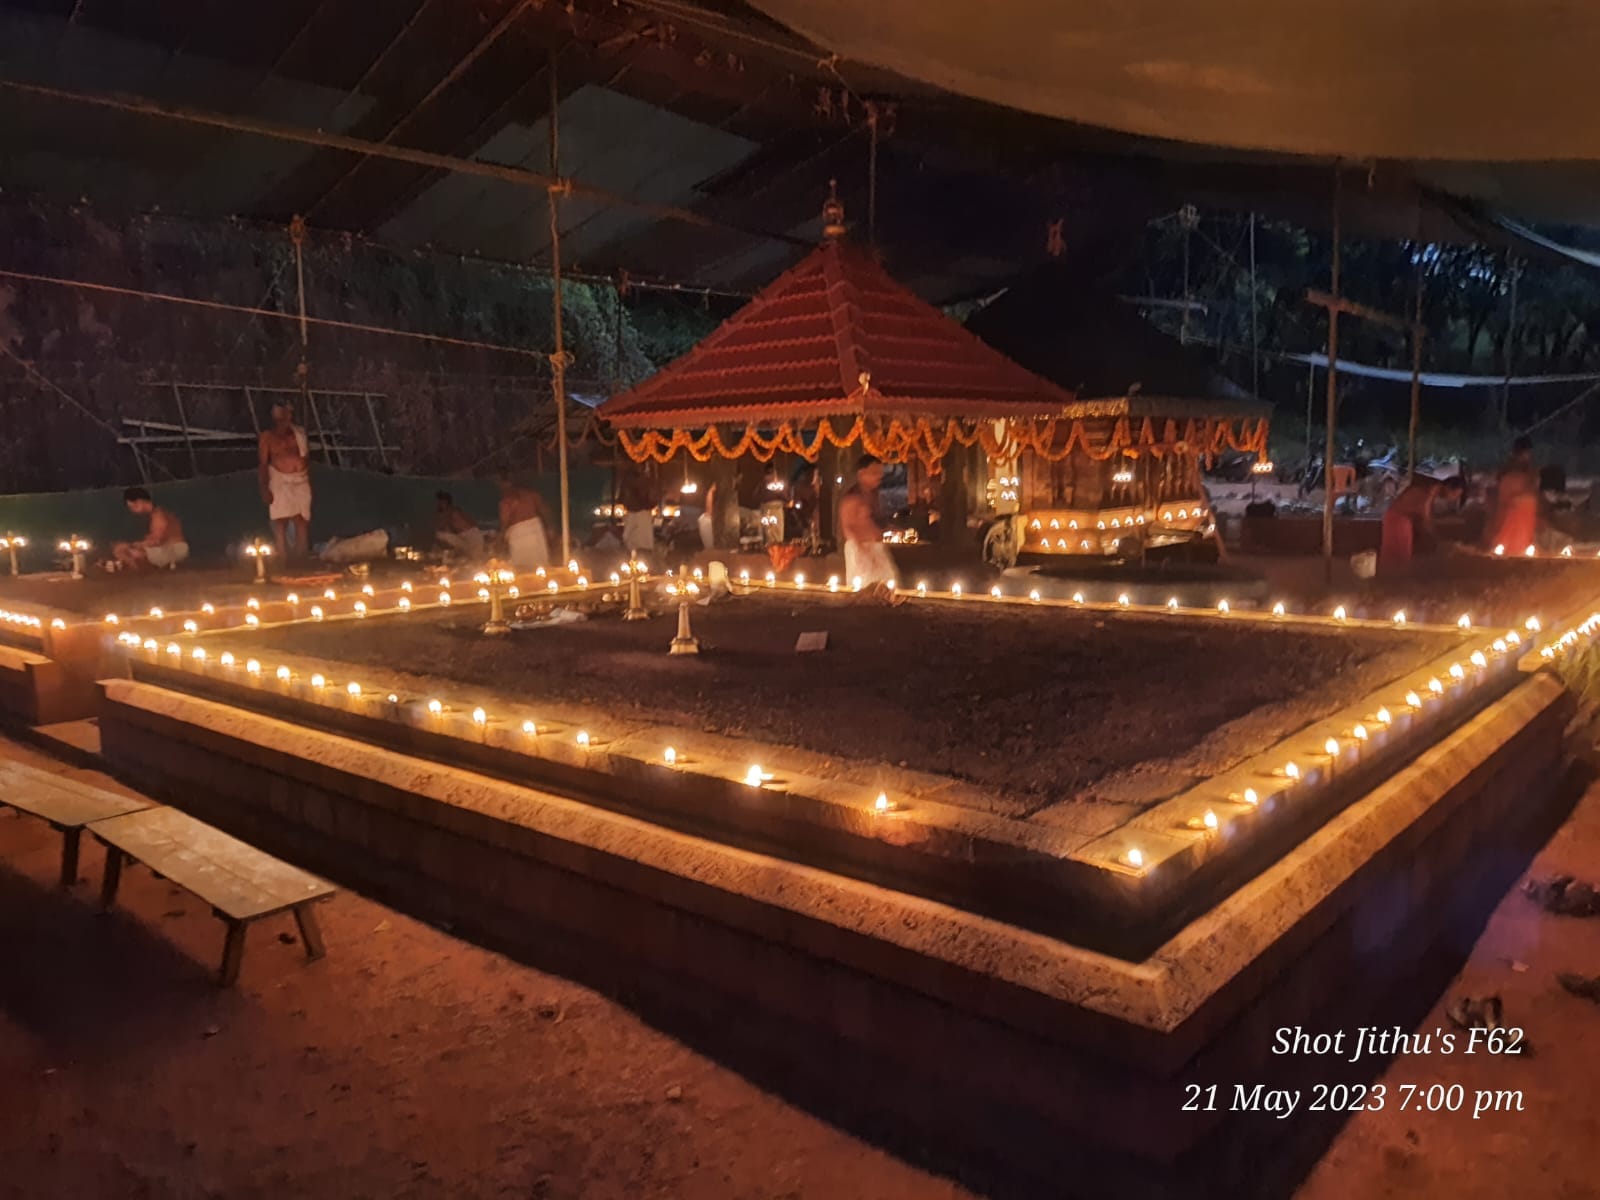 Eswaroth Sree Mahadeva Temple